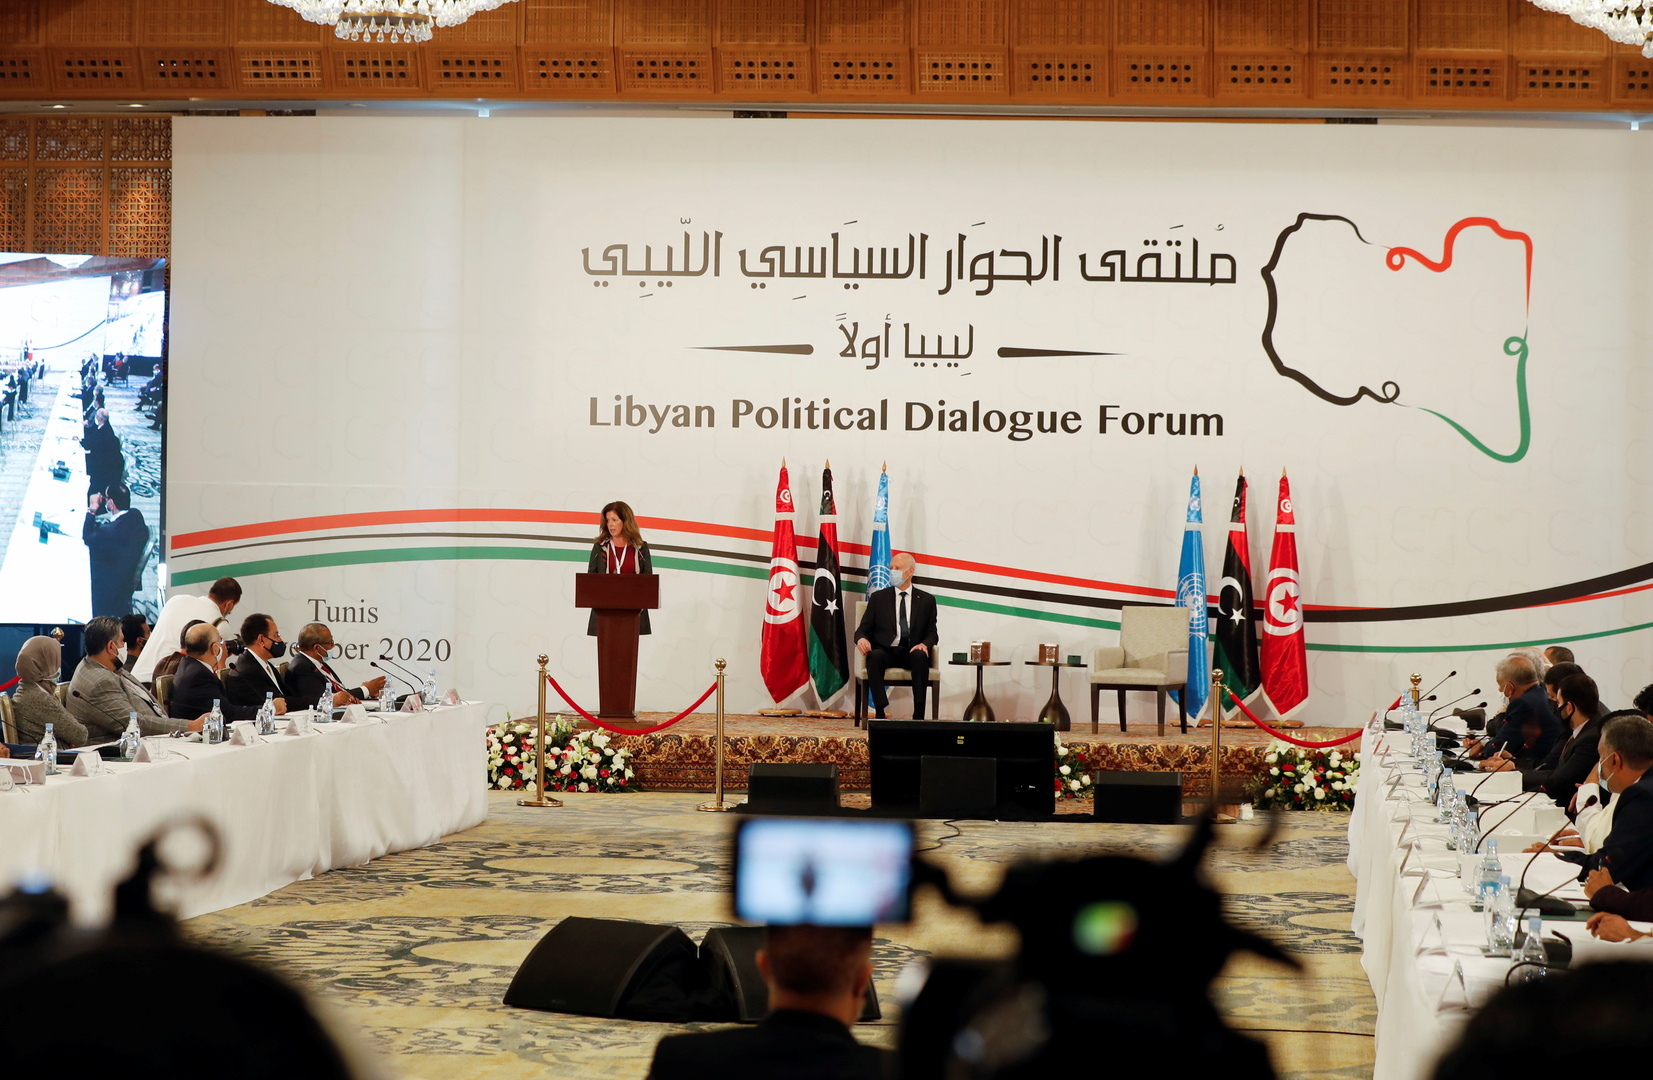 المنقوش ولعمامرة يبحثان آفاق التوصل إلى تسوية سلمية في ليبيا